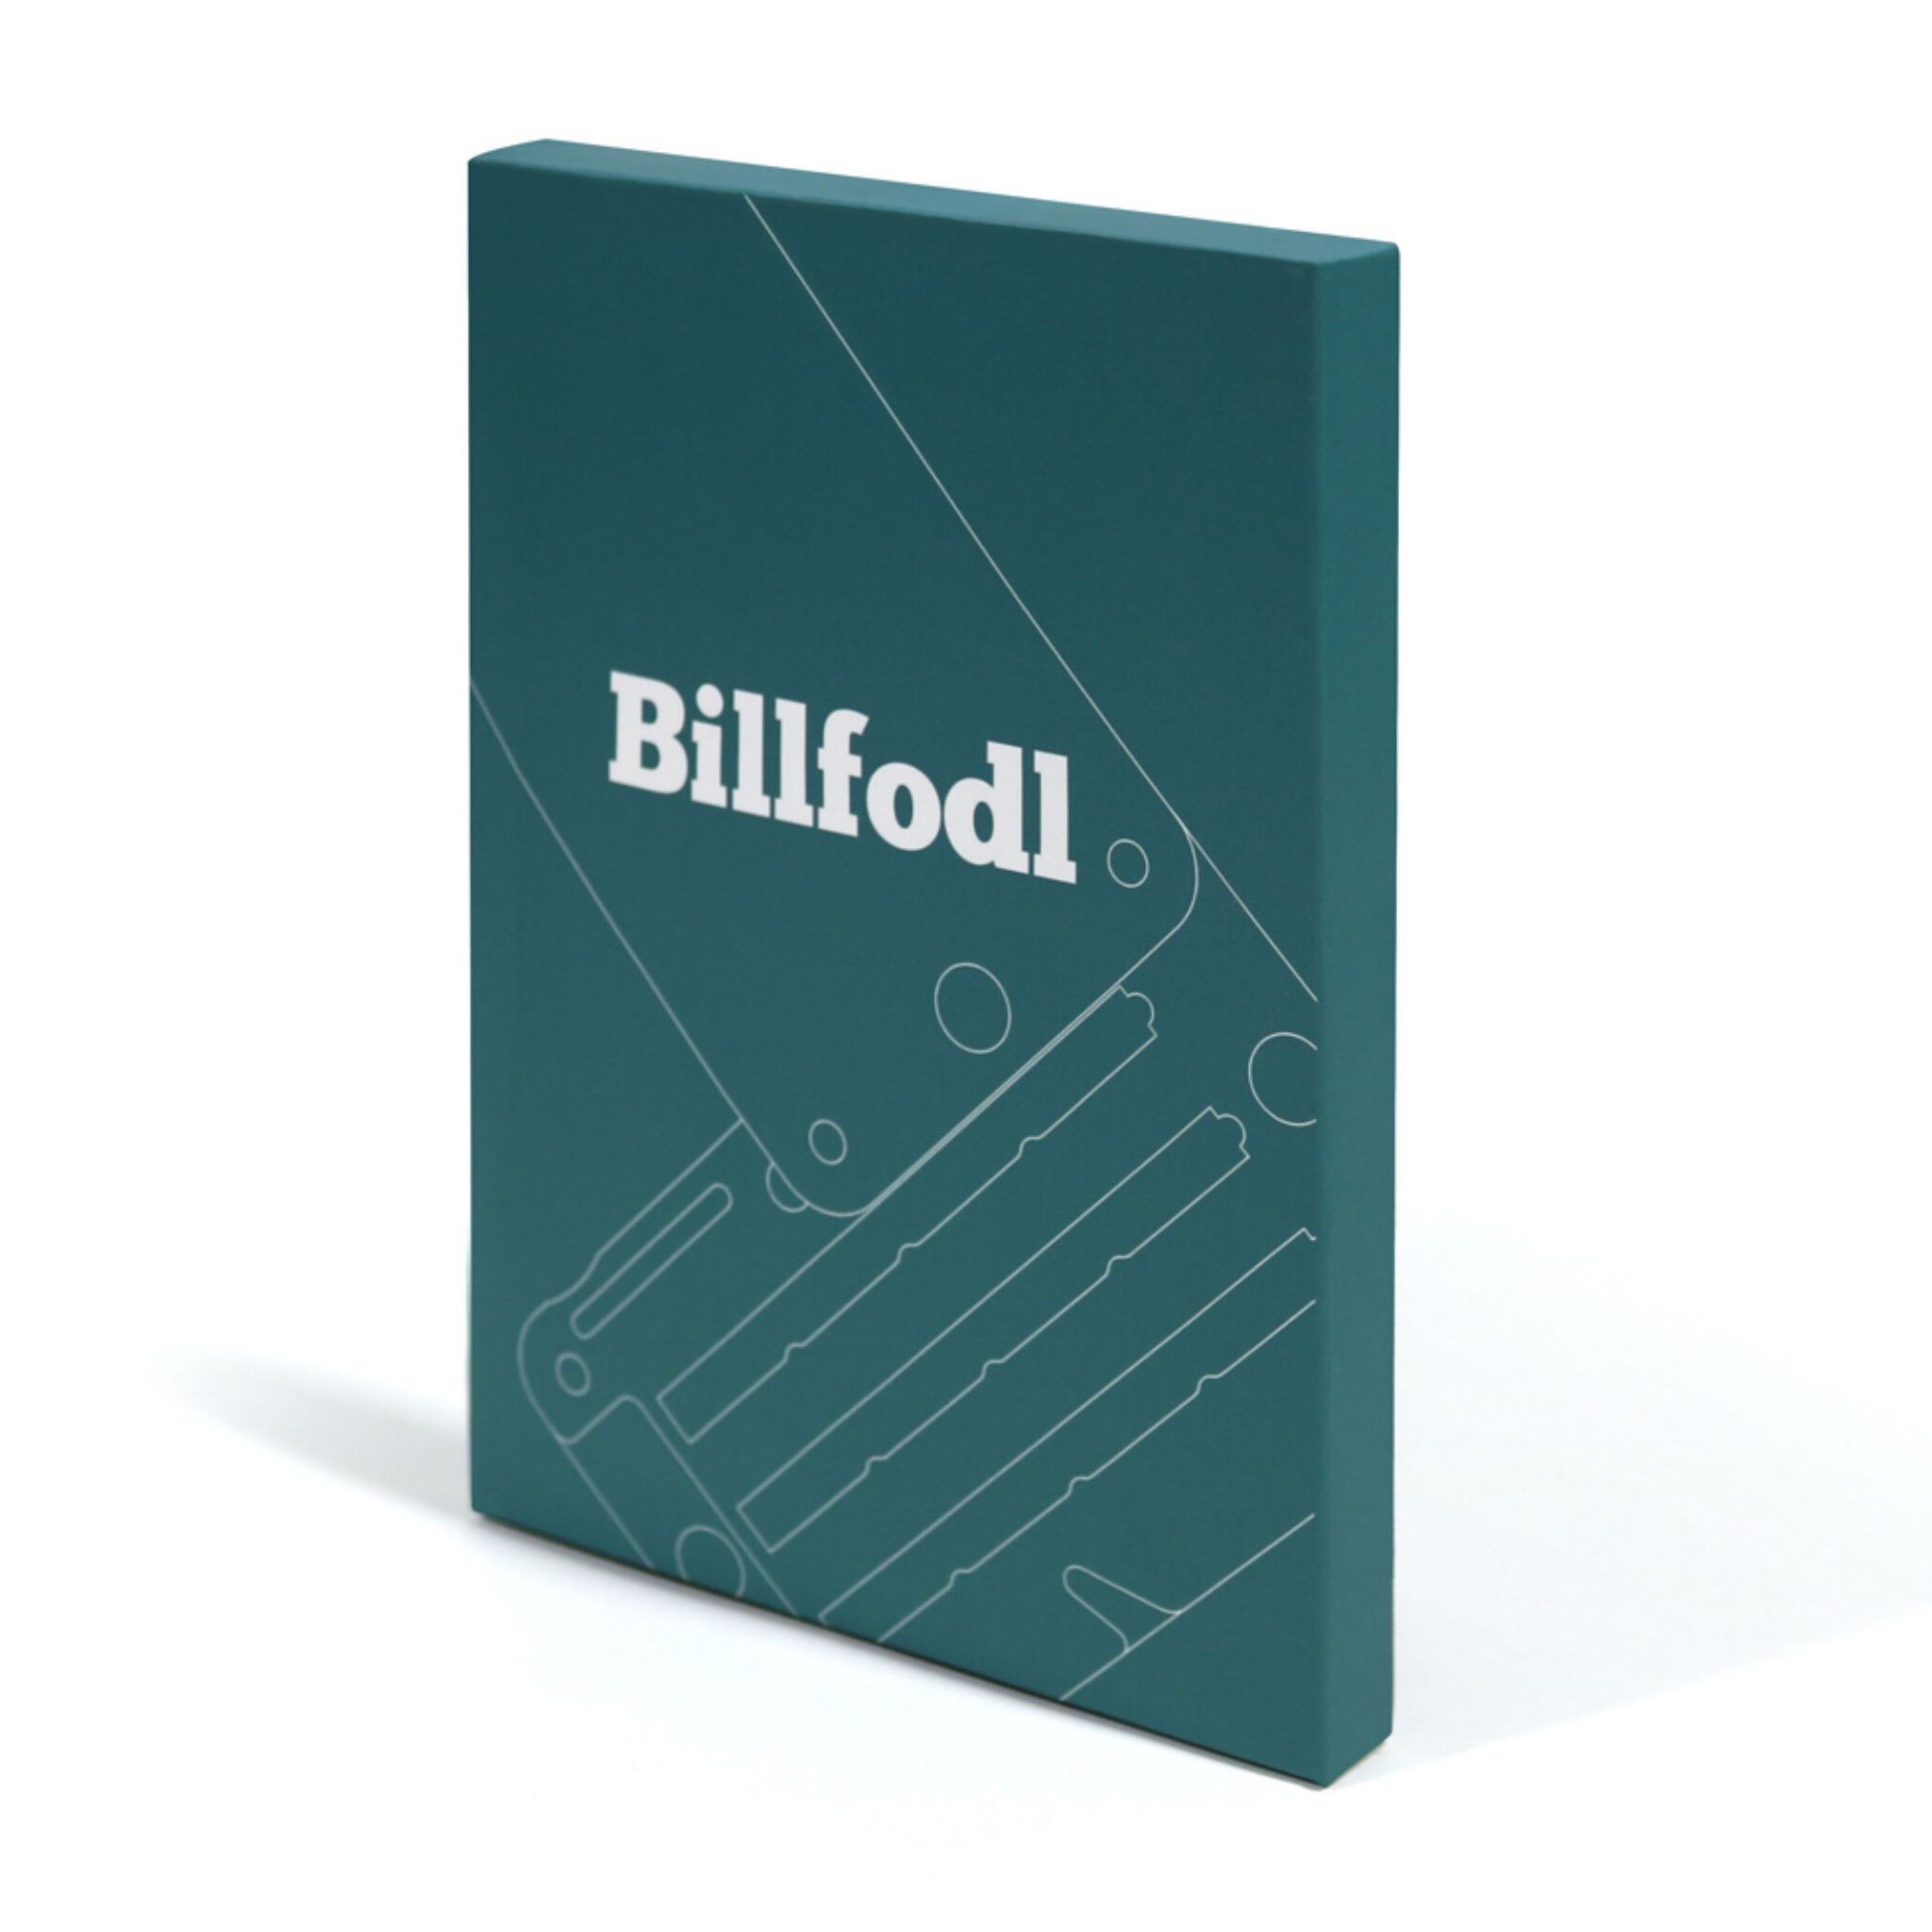 Billfodl Box